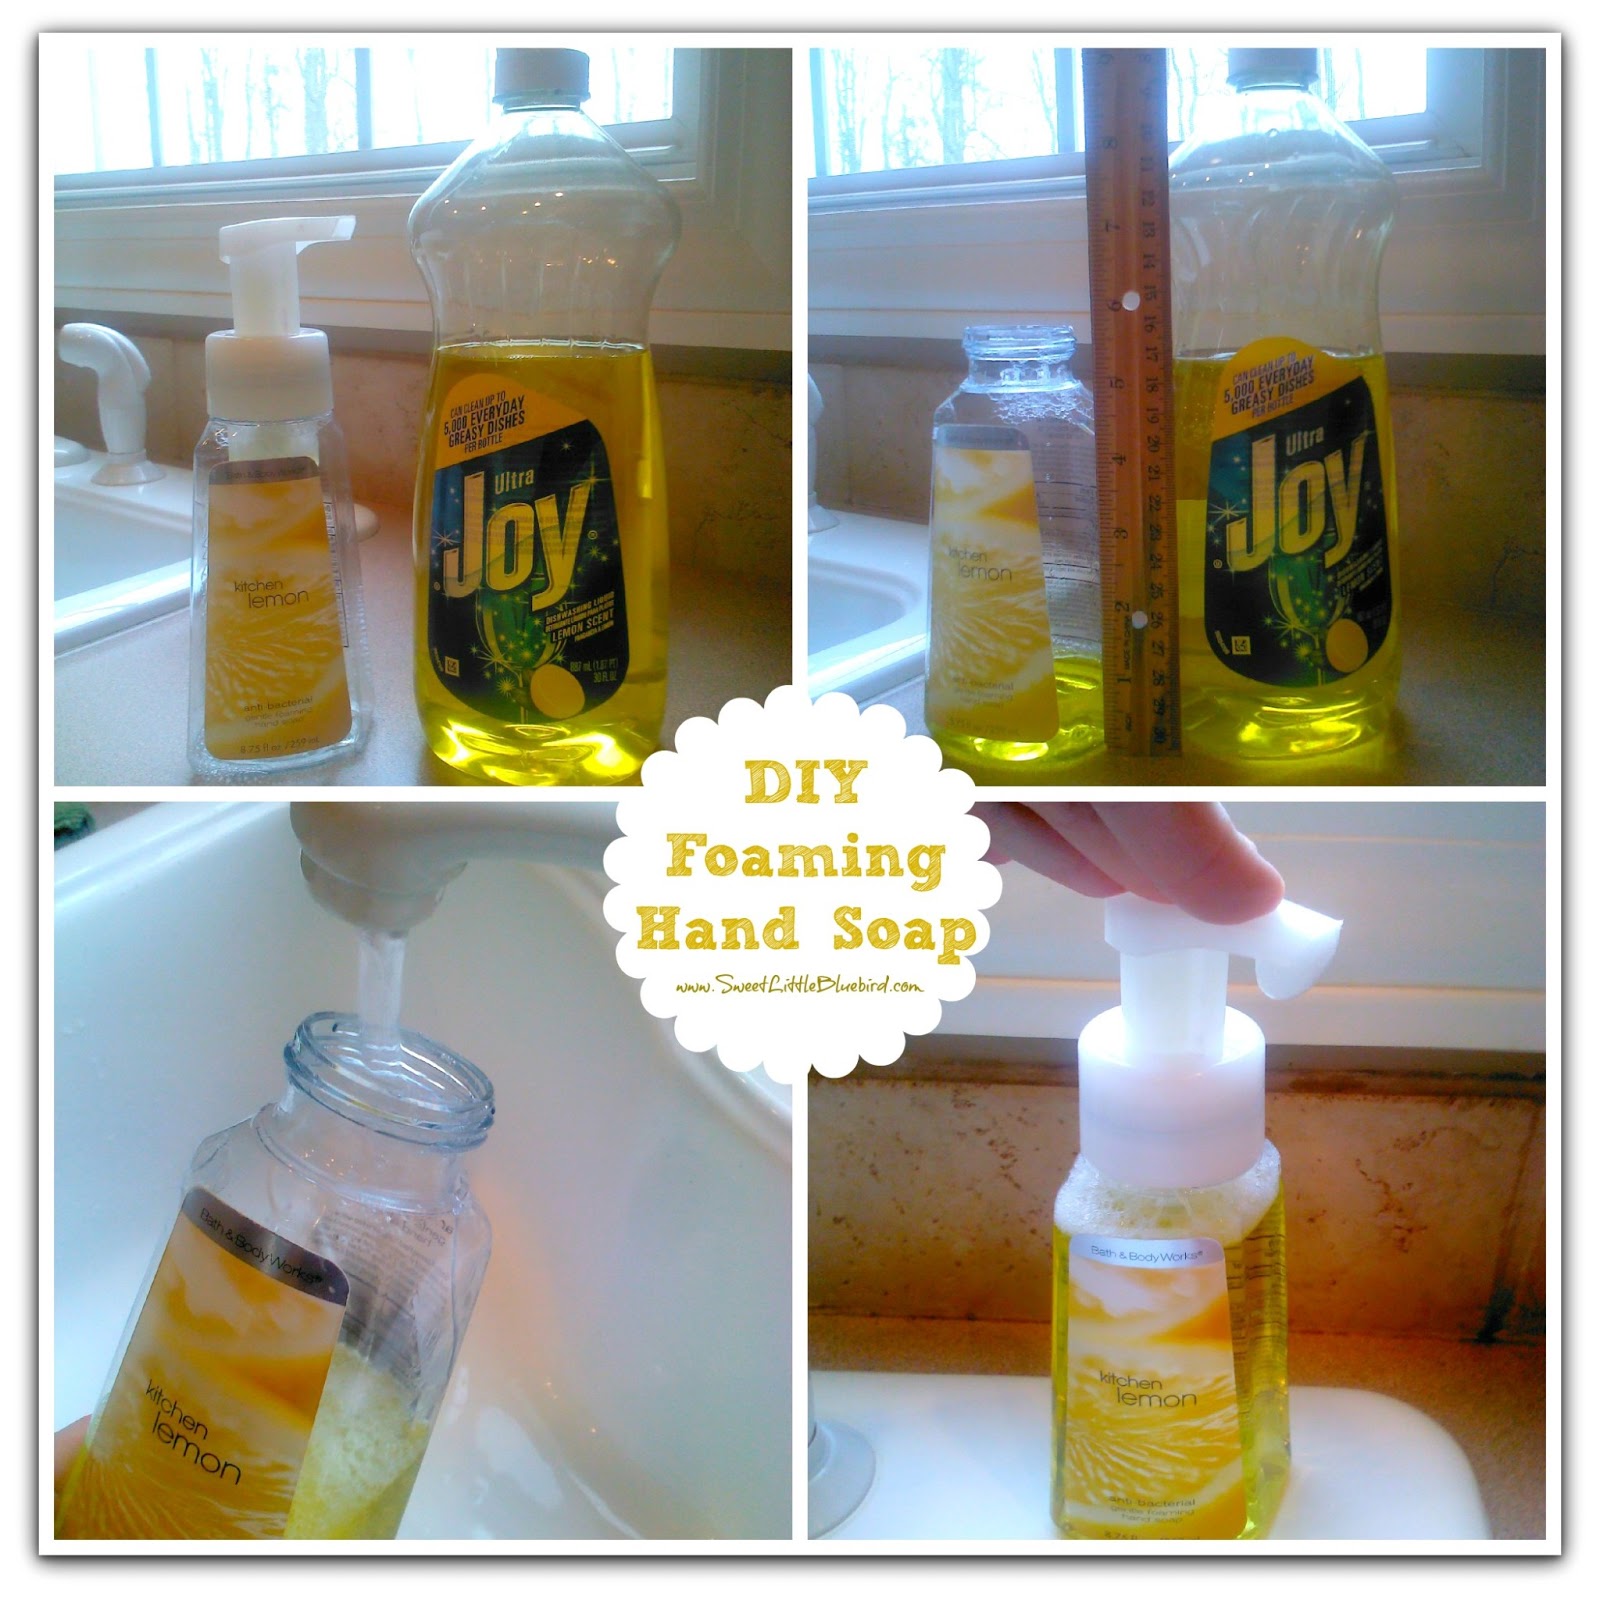 http://3.bp.blogspot.com/-oGxR9qMtPeU/UTU9vlvrAoI/AAAAAAAAXGw/WkpHtf4xyuk/s1600/How+to+Make+your+own++DIY+Foaming+Hand+Soap+Lemon2.jpg